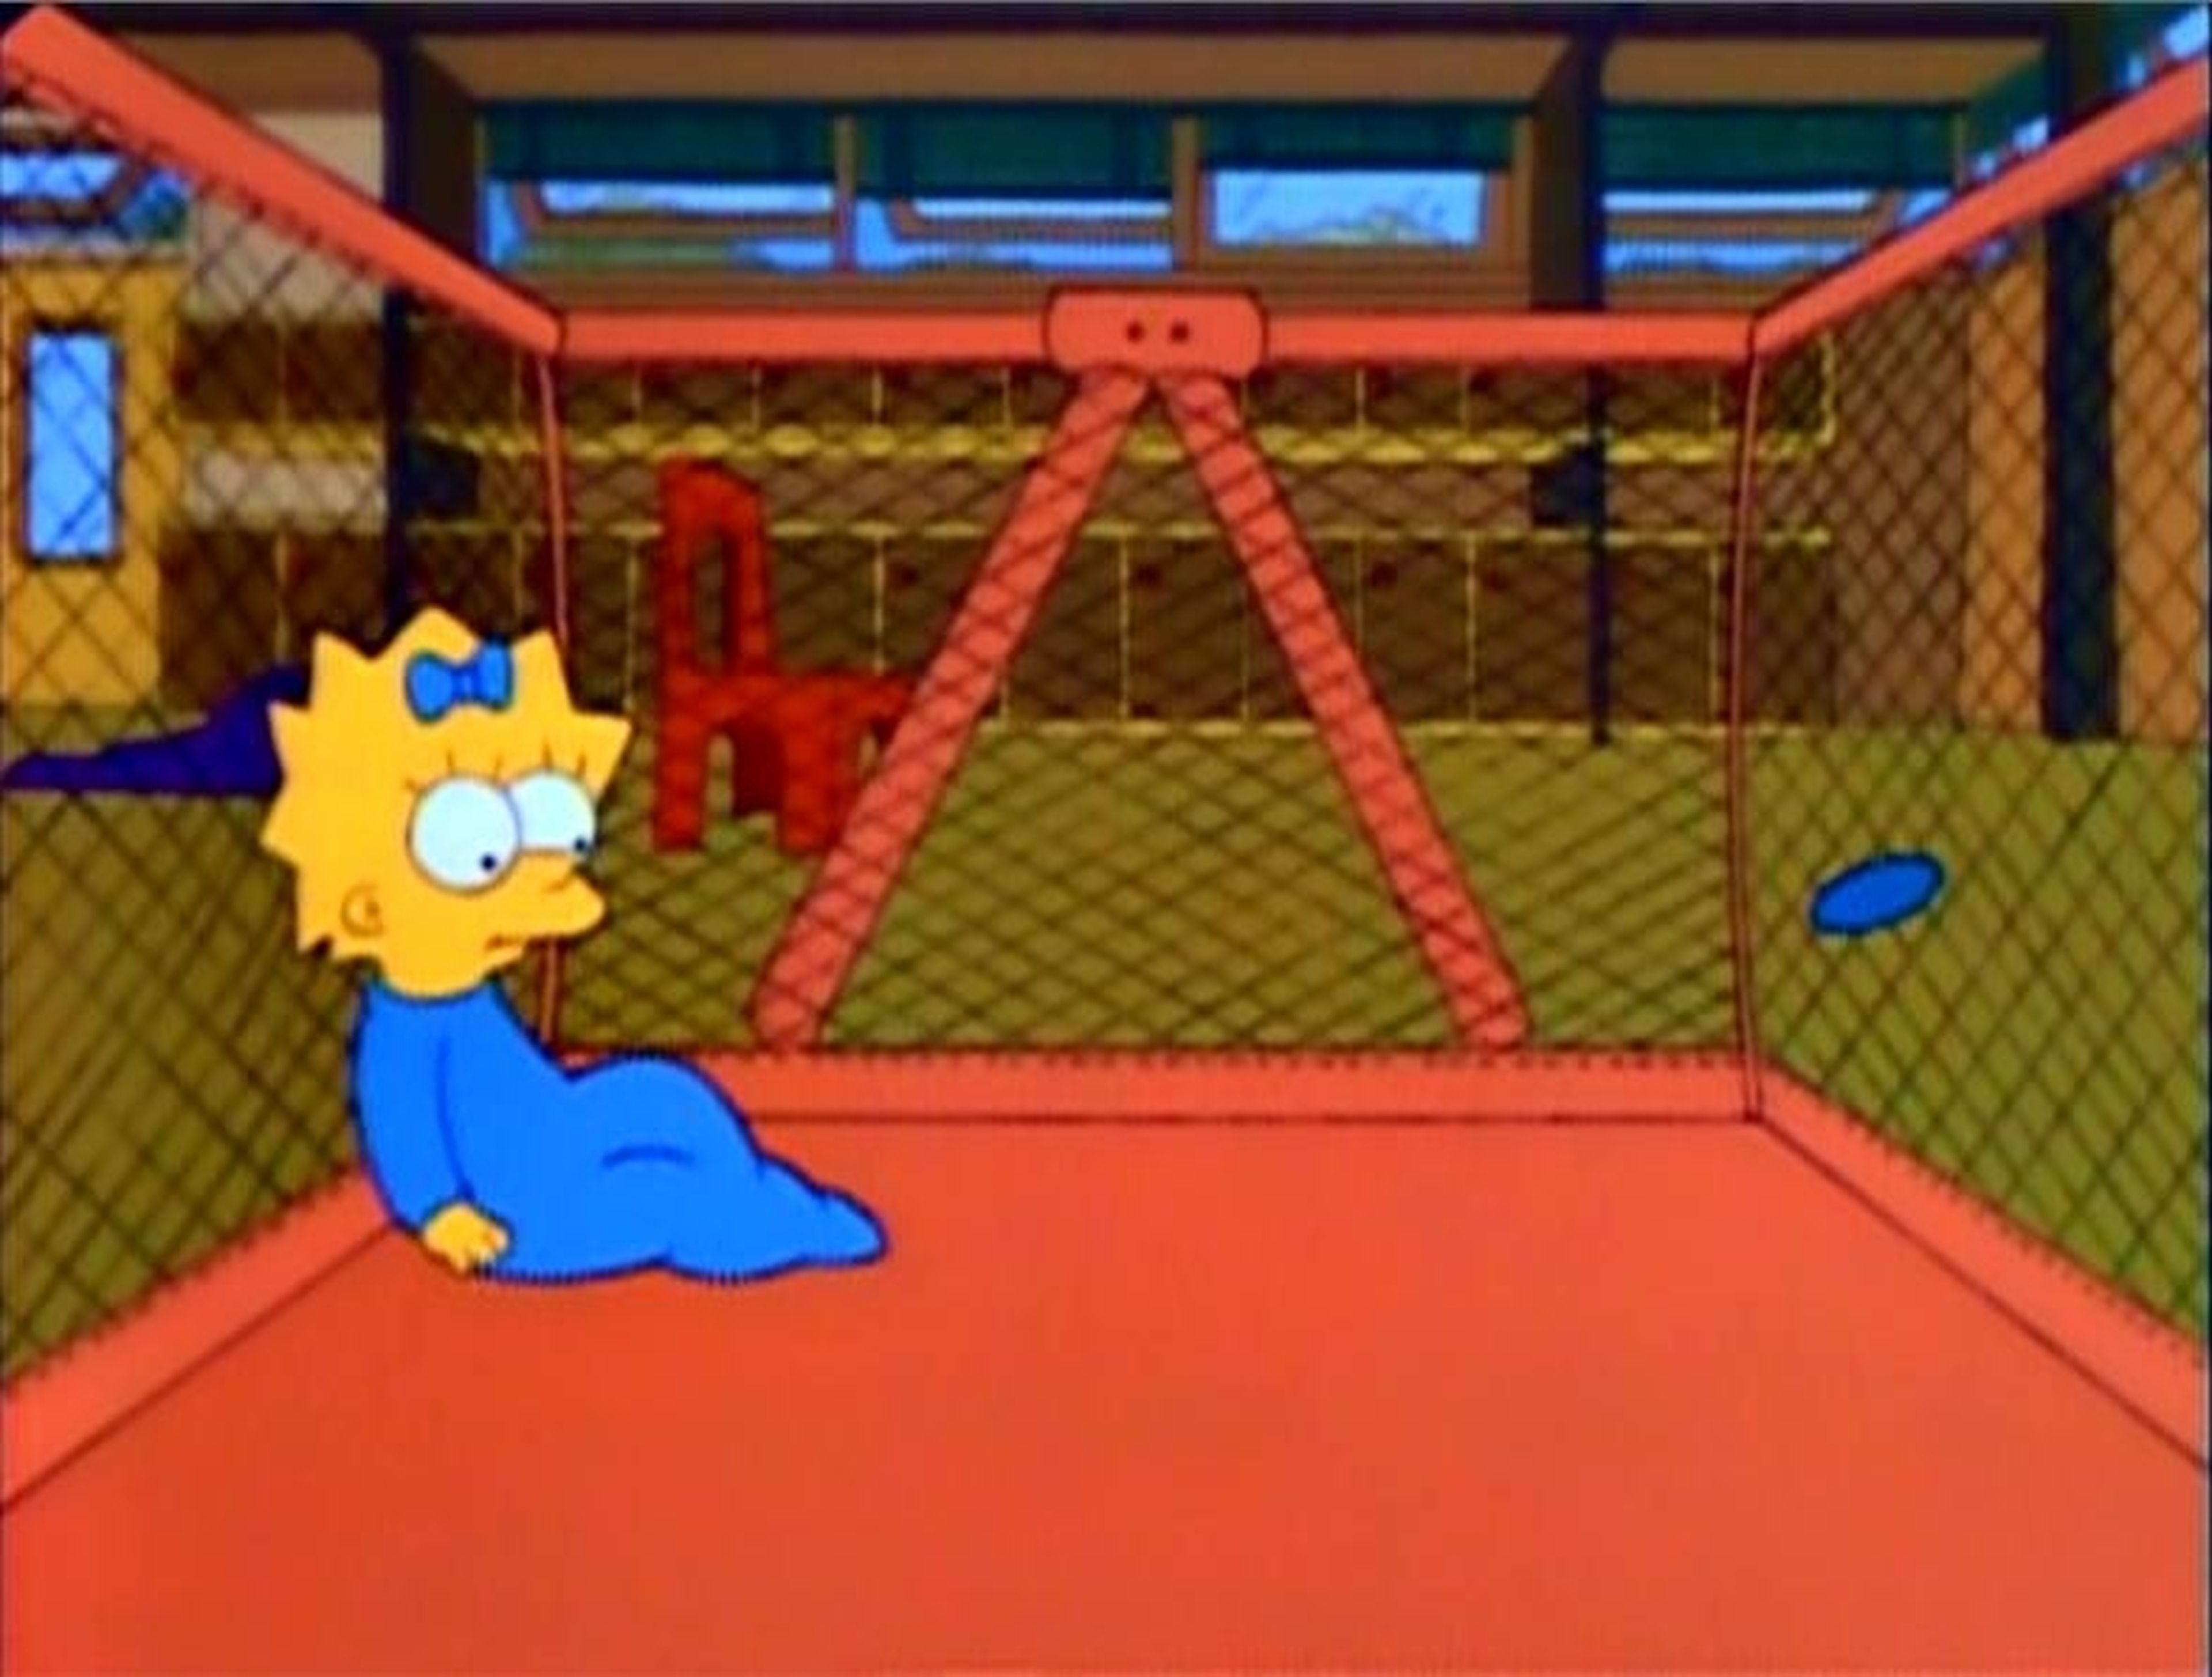 Los Simpson: 138 referencias a películas